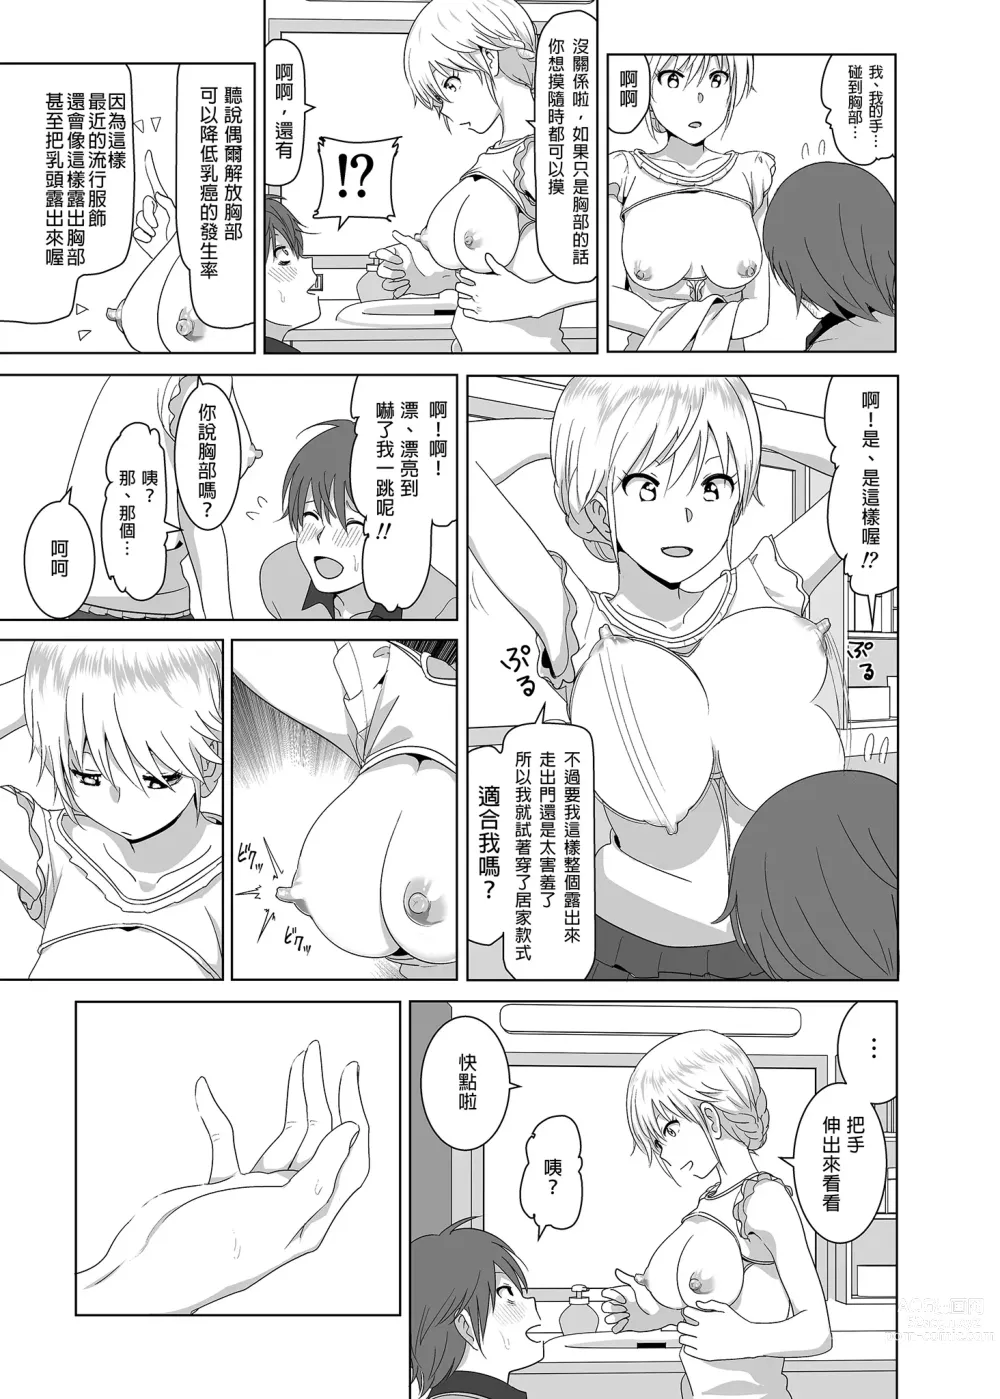 Page 10 of doujinshi 關於妹妹胸部 整顆露出來的那件事 總集篇1 (decensored)